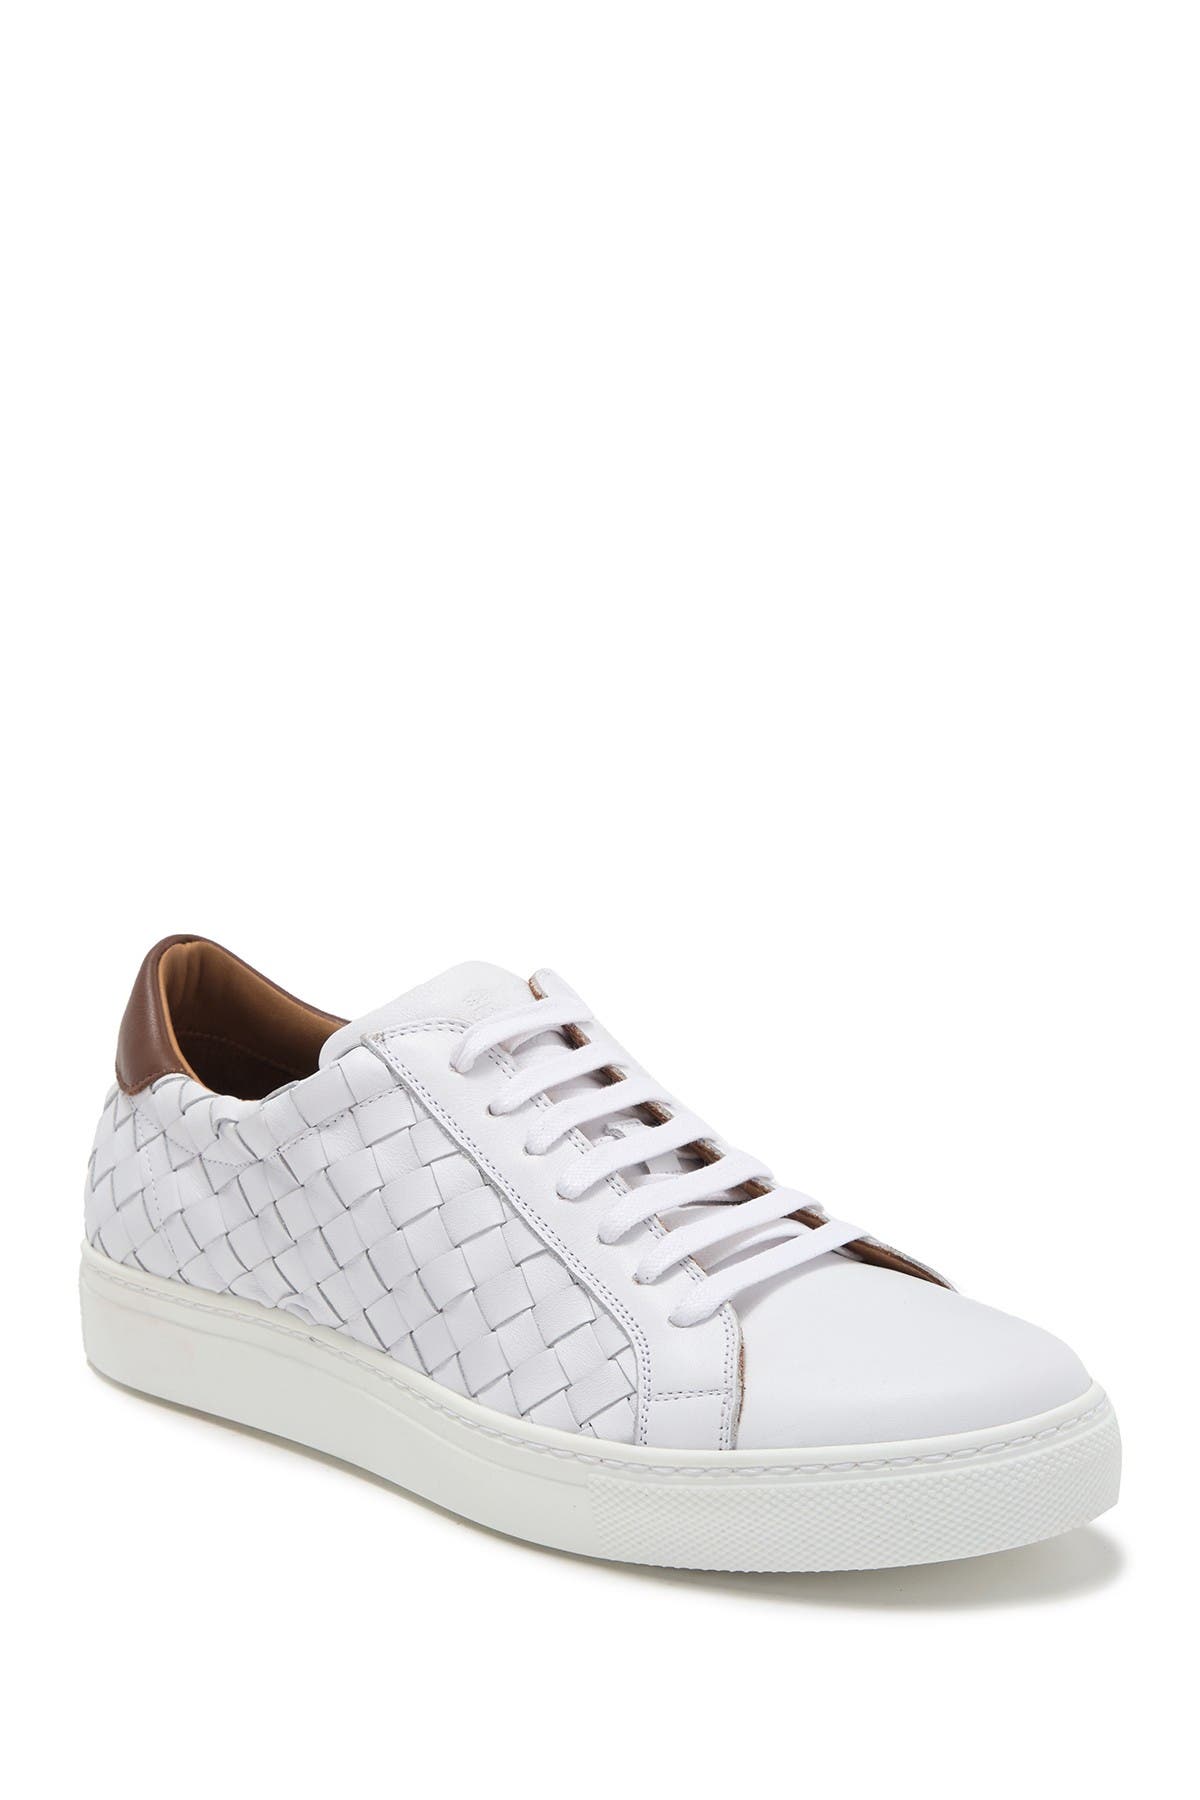 bruno magli white sneakers